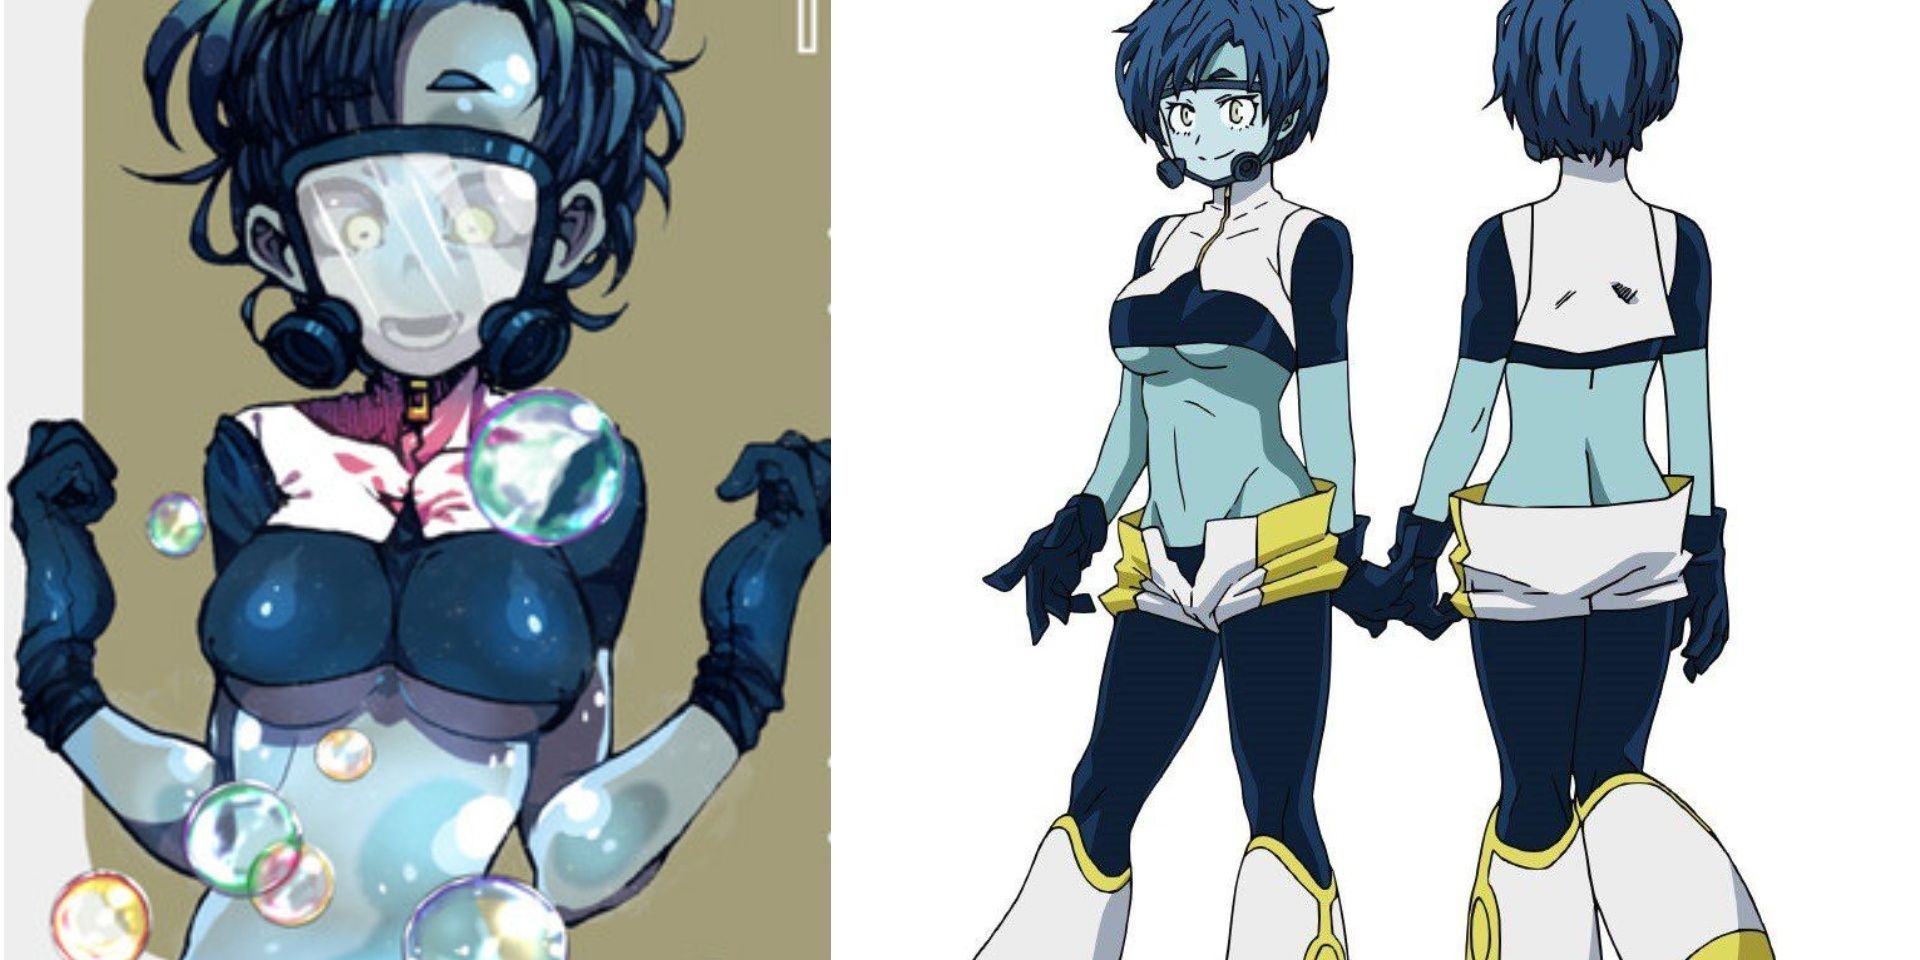 Bubble Girl Original Design versus Anime Design